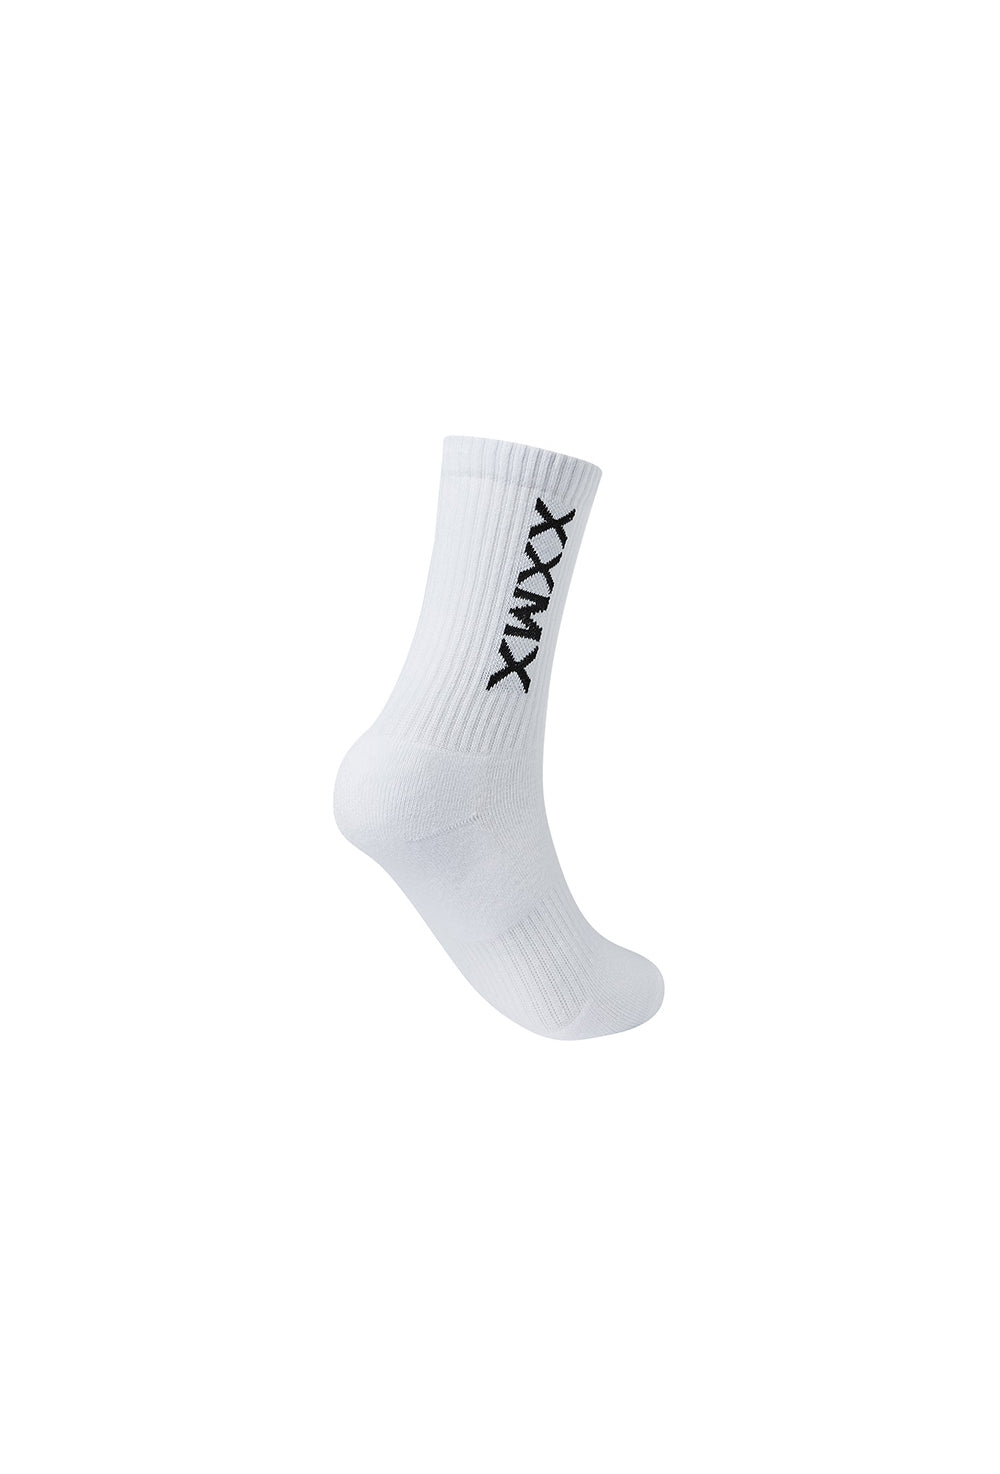 XEXYMIX Logo Crew Socks - Black